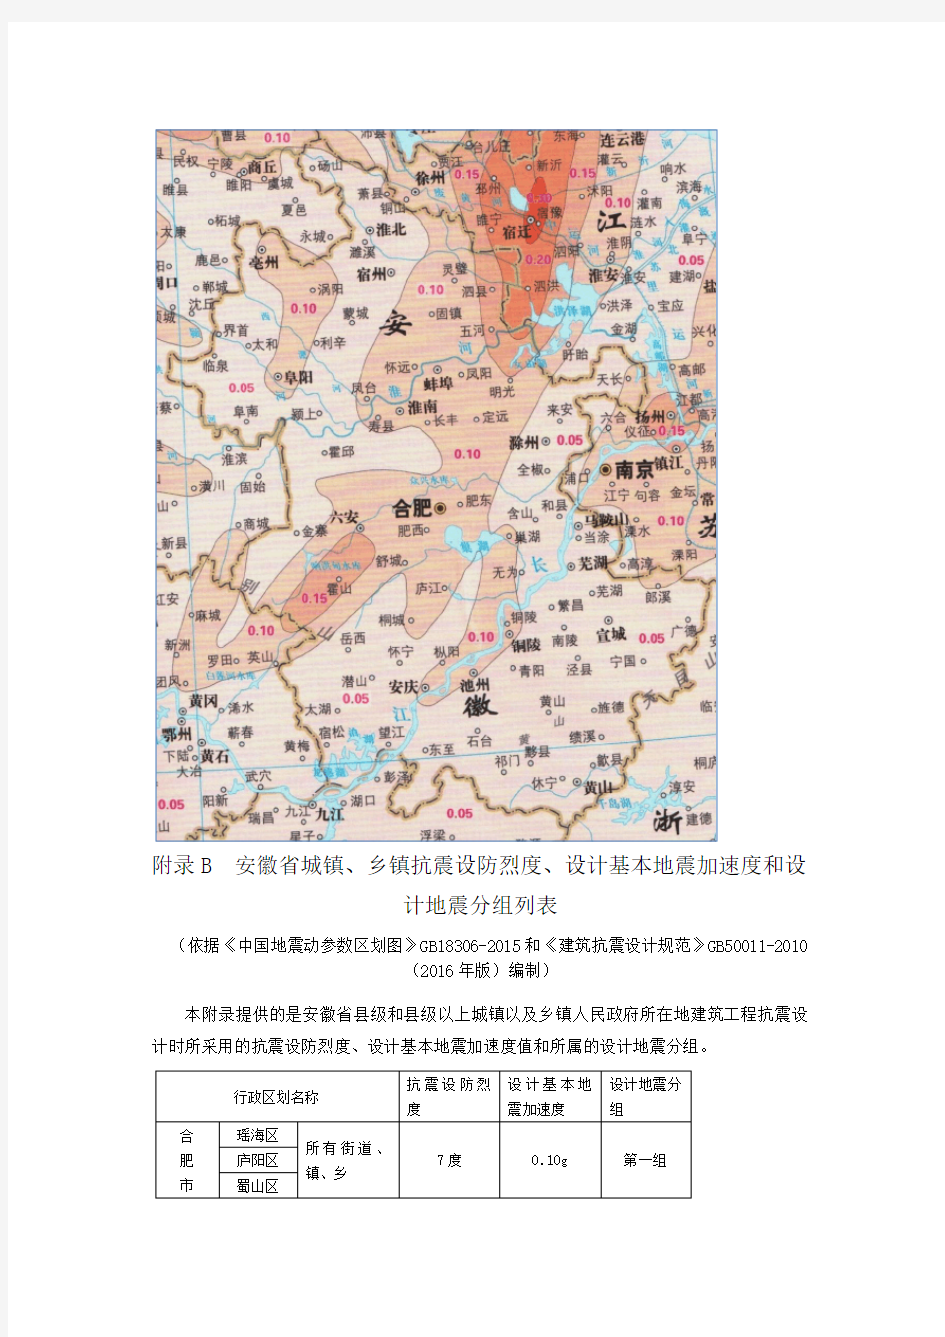 安徽省城镇、乡镇抗震设防烈度、设计基本地震加速度和设计地震分组列表